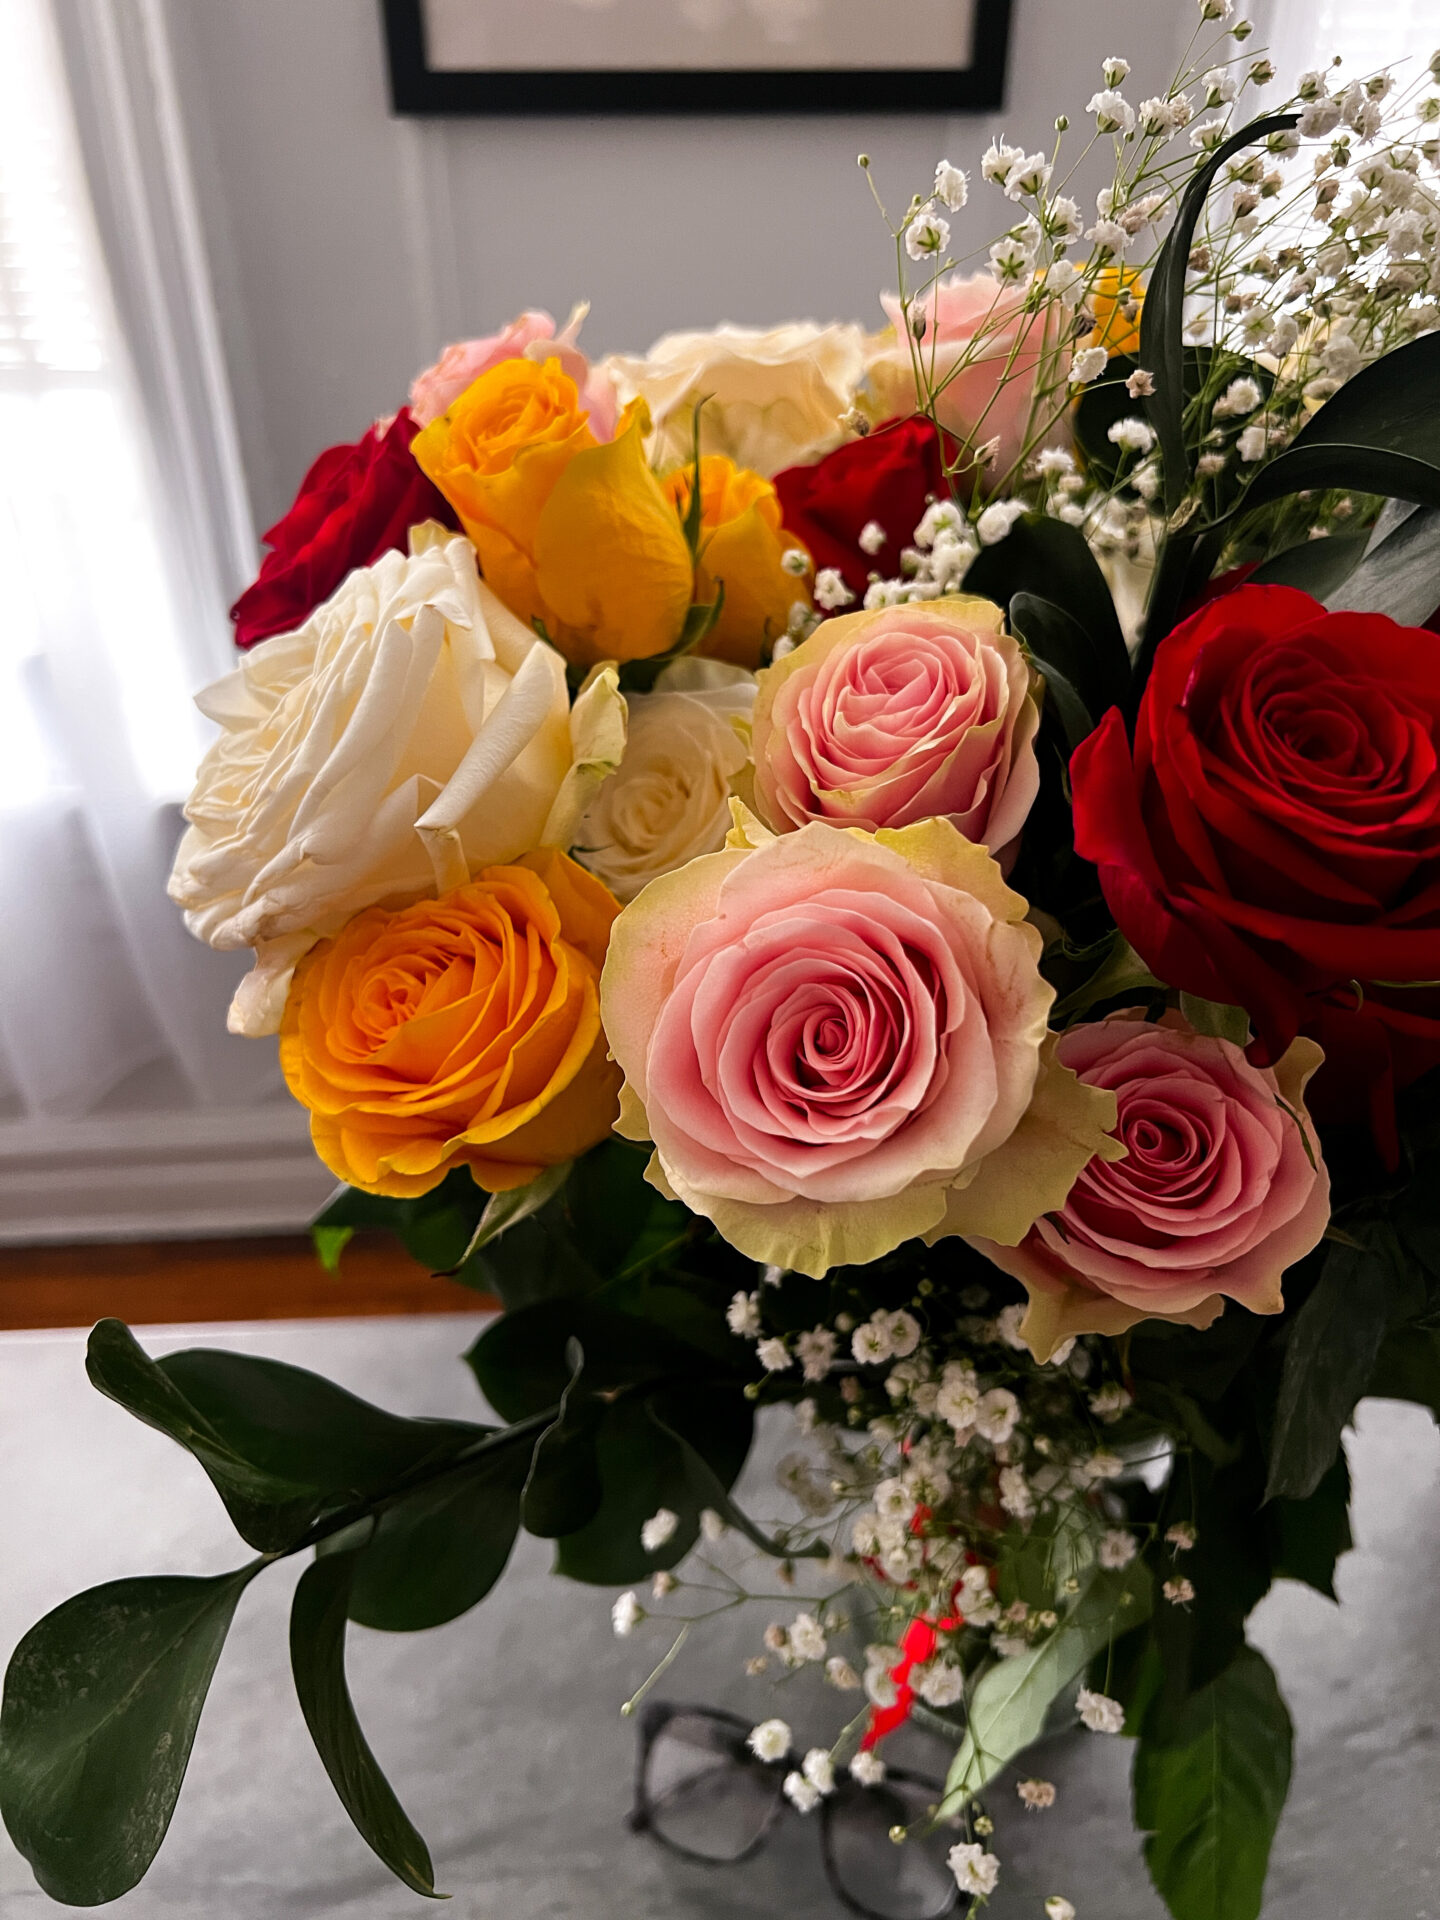 may favorites - doordash delivers flowers